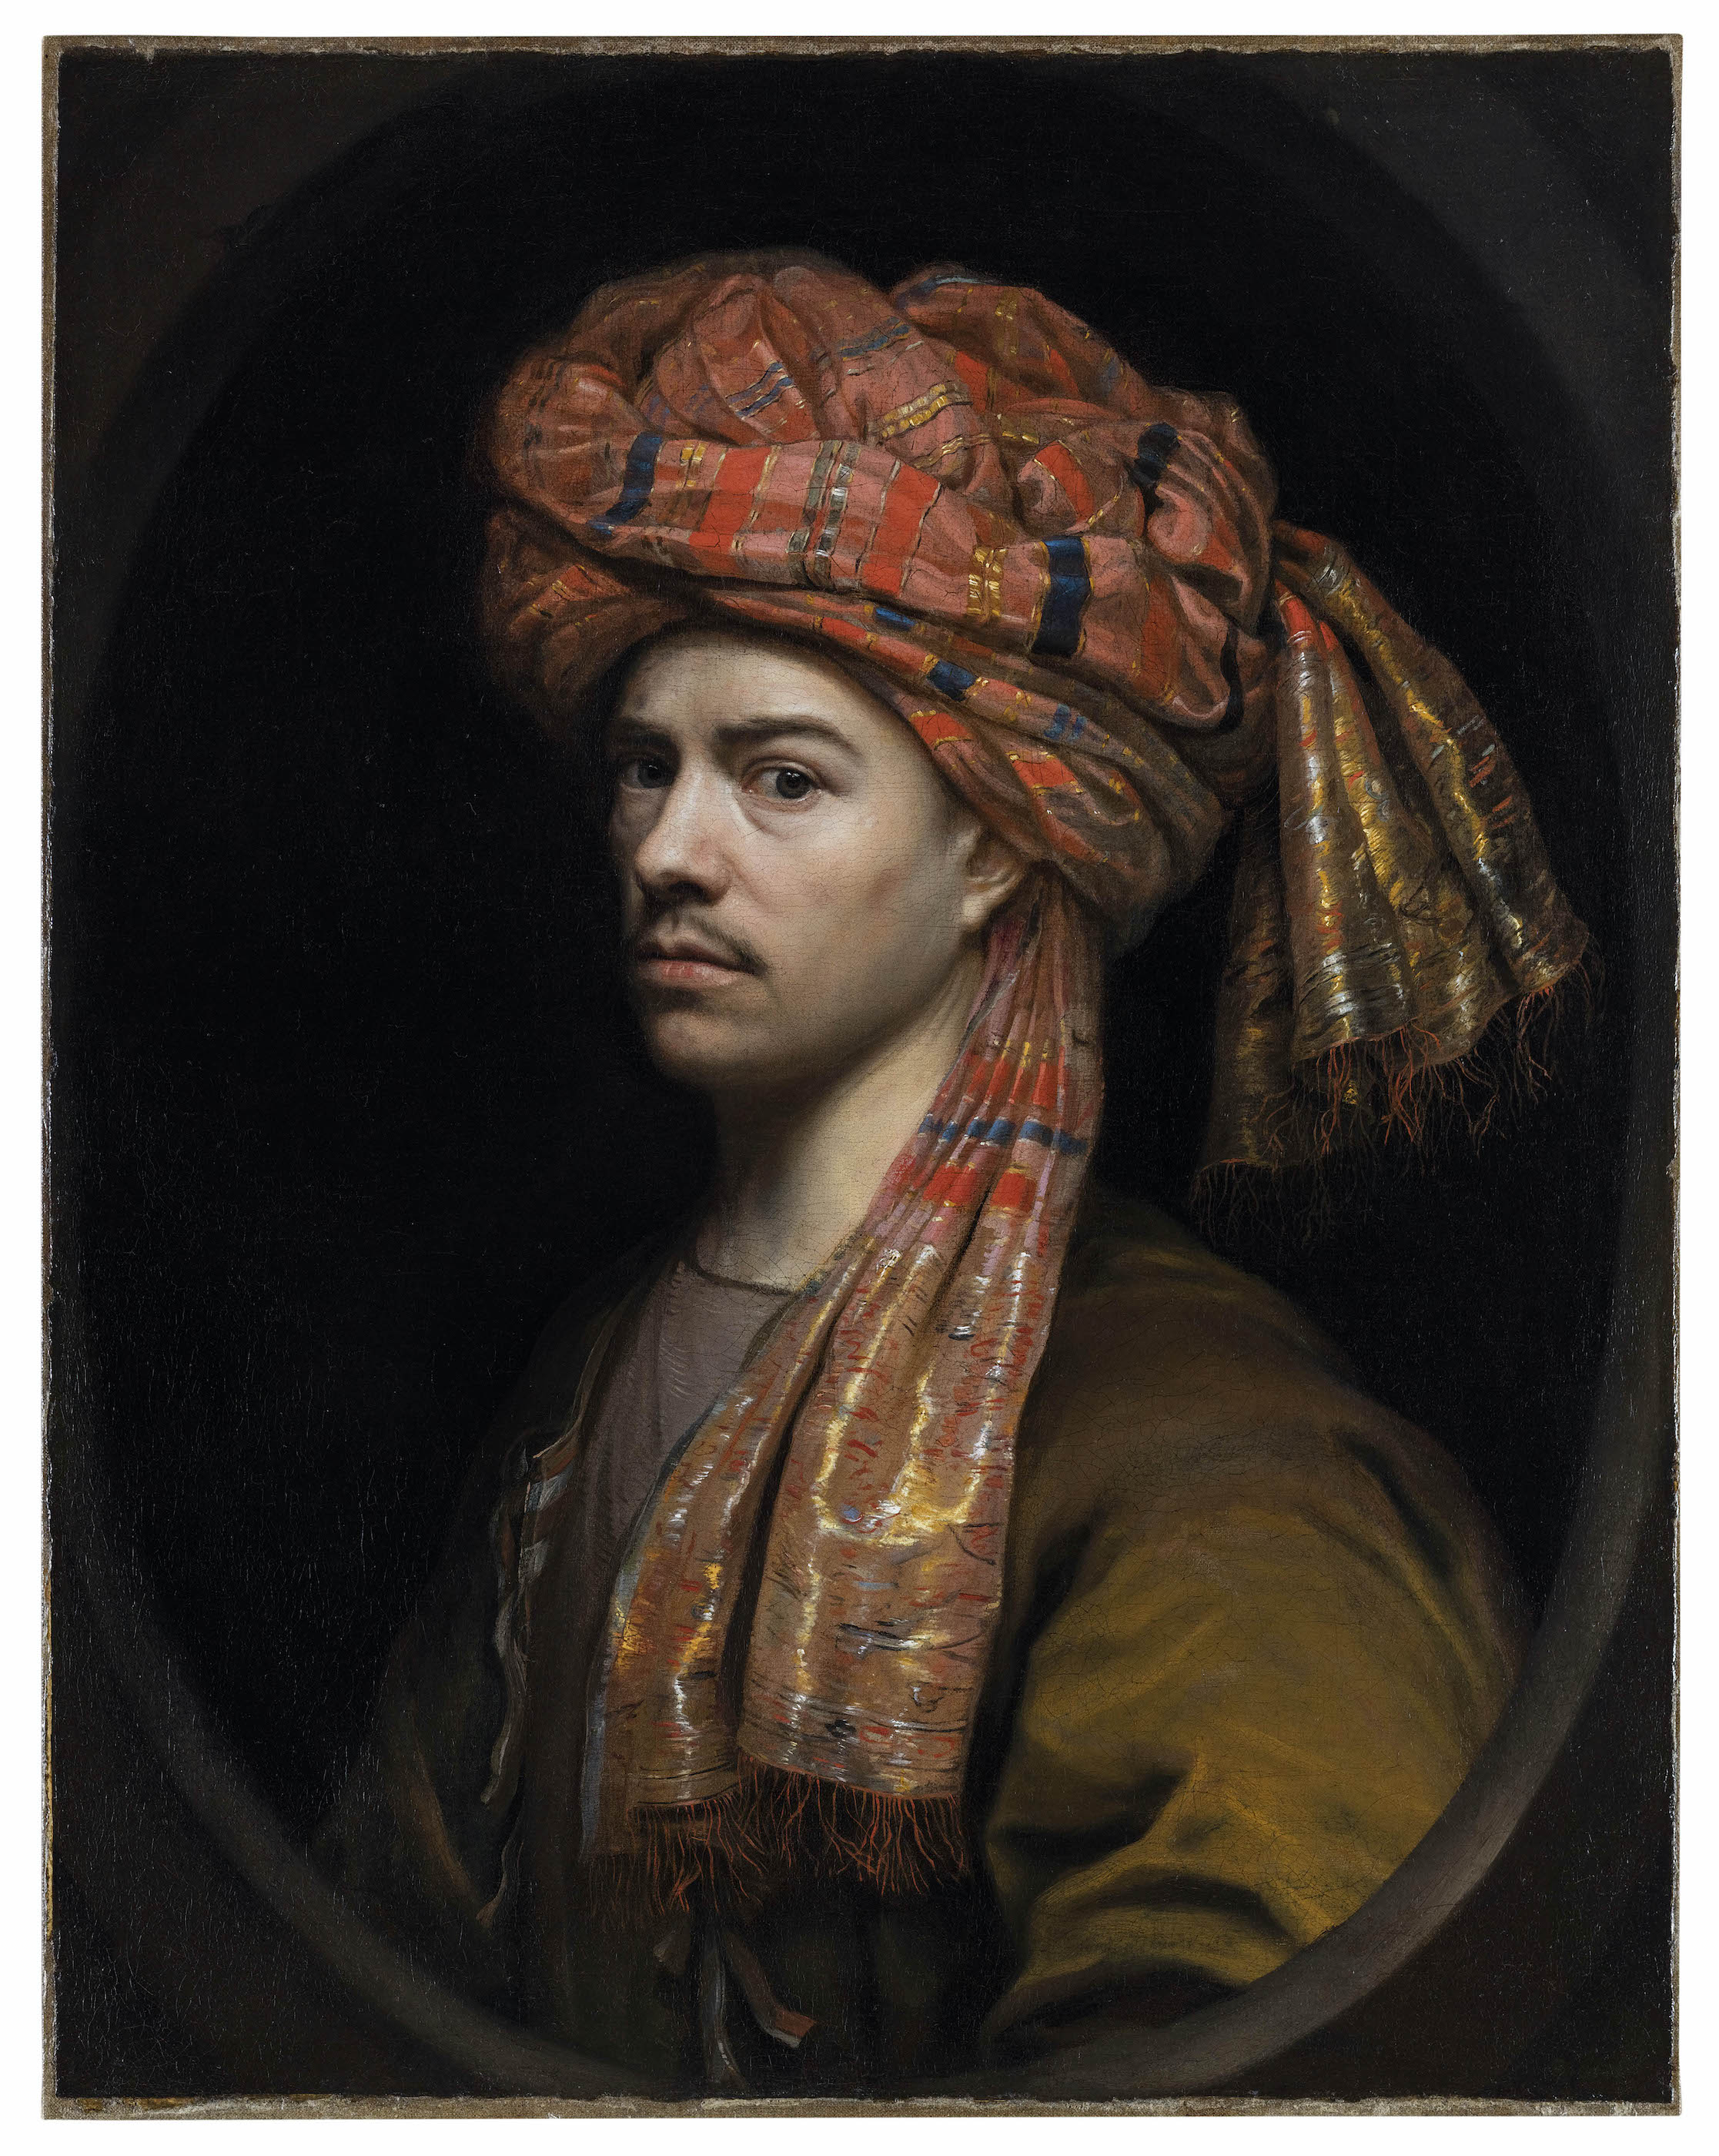 터번을 두른 자화상(Self-Portrait With a Turban) by Wallerant Vaillant - 1650-1660 - 74 x 59.5 cm 